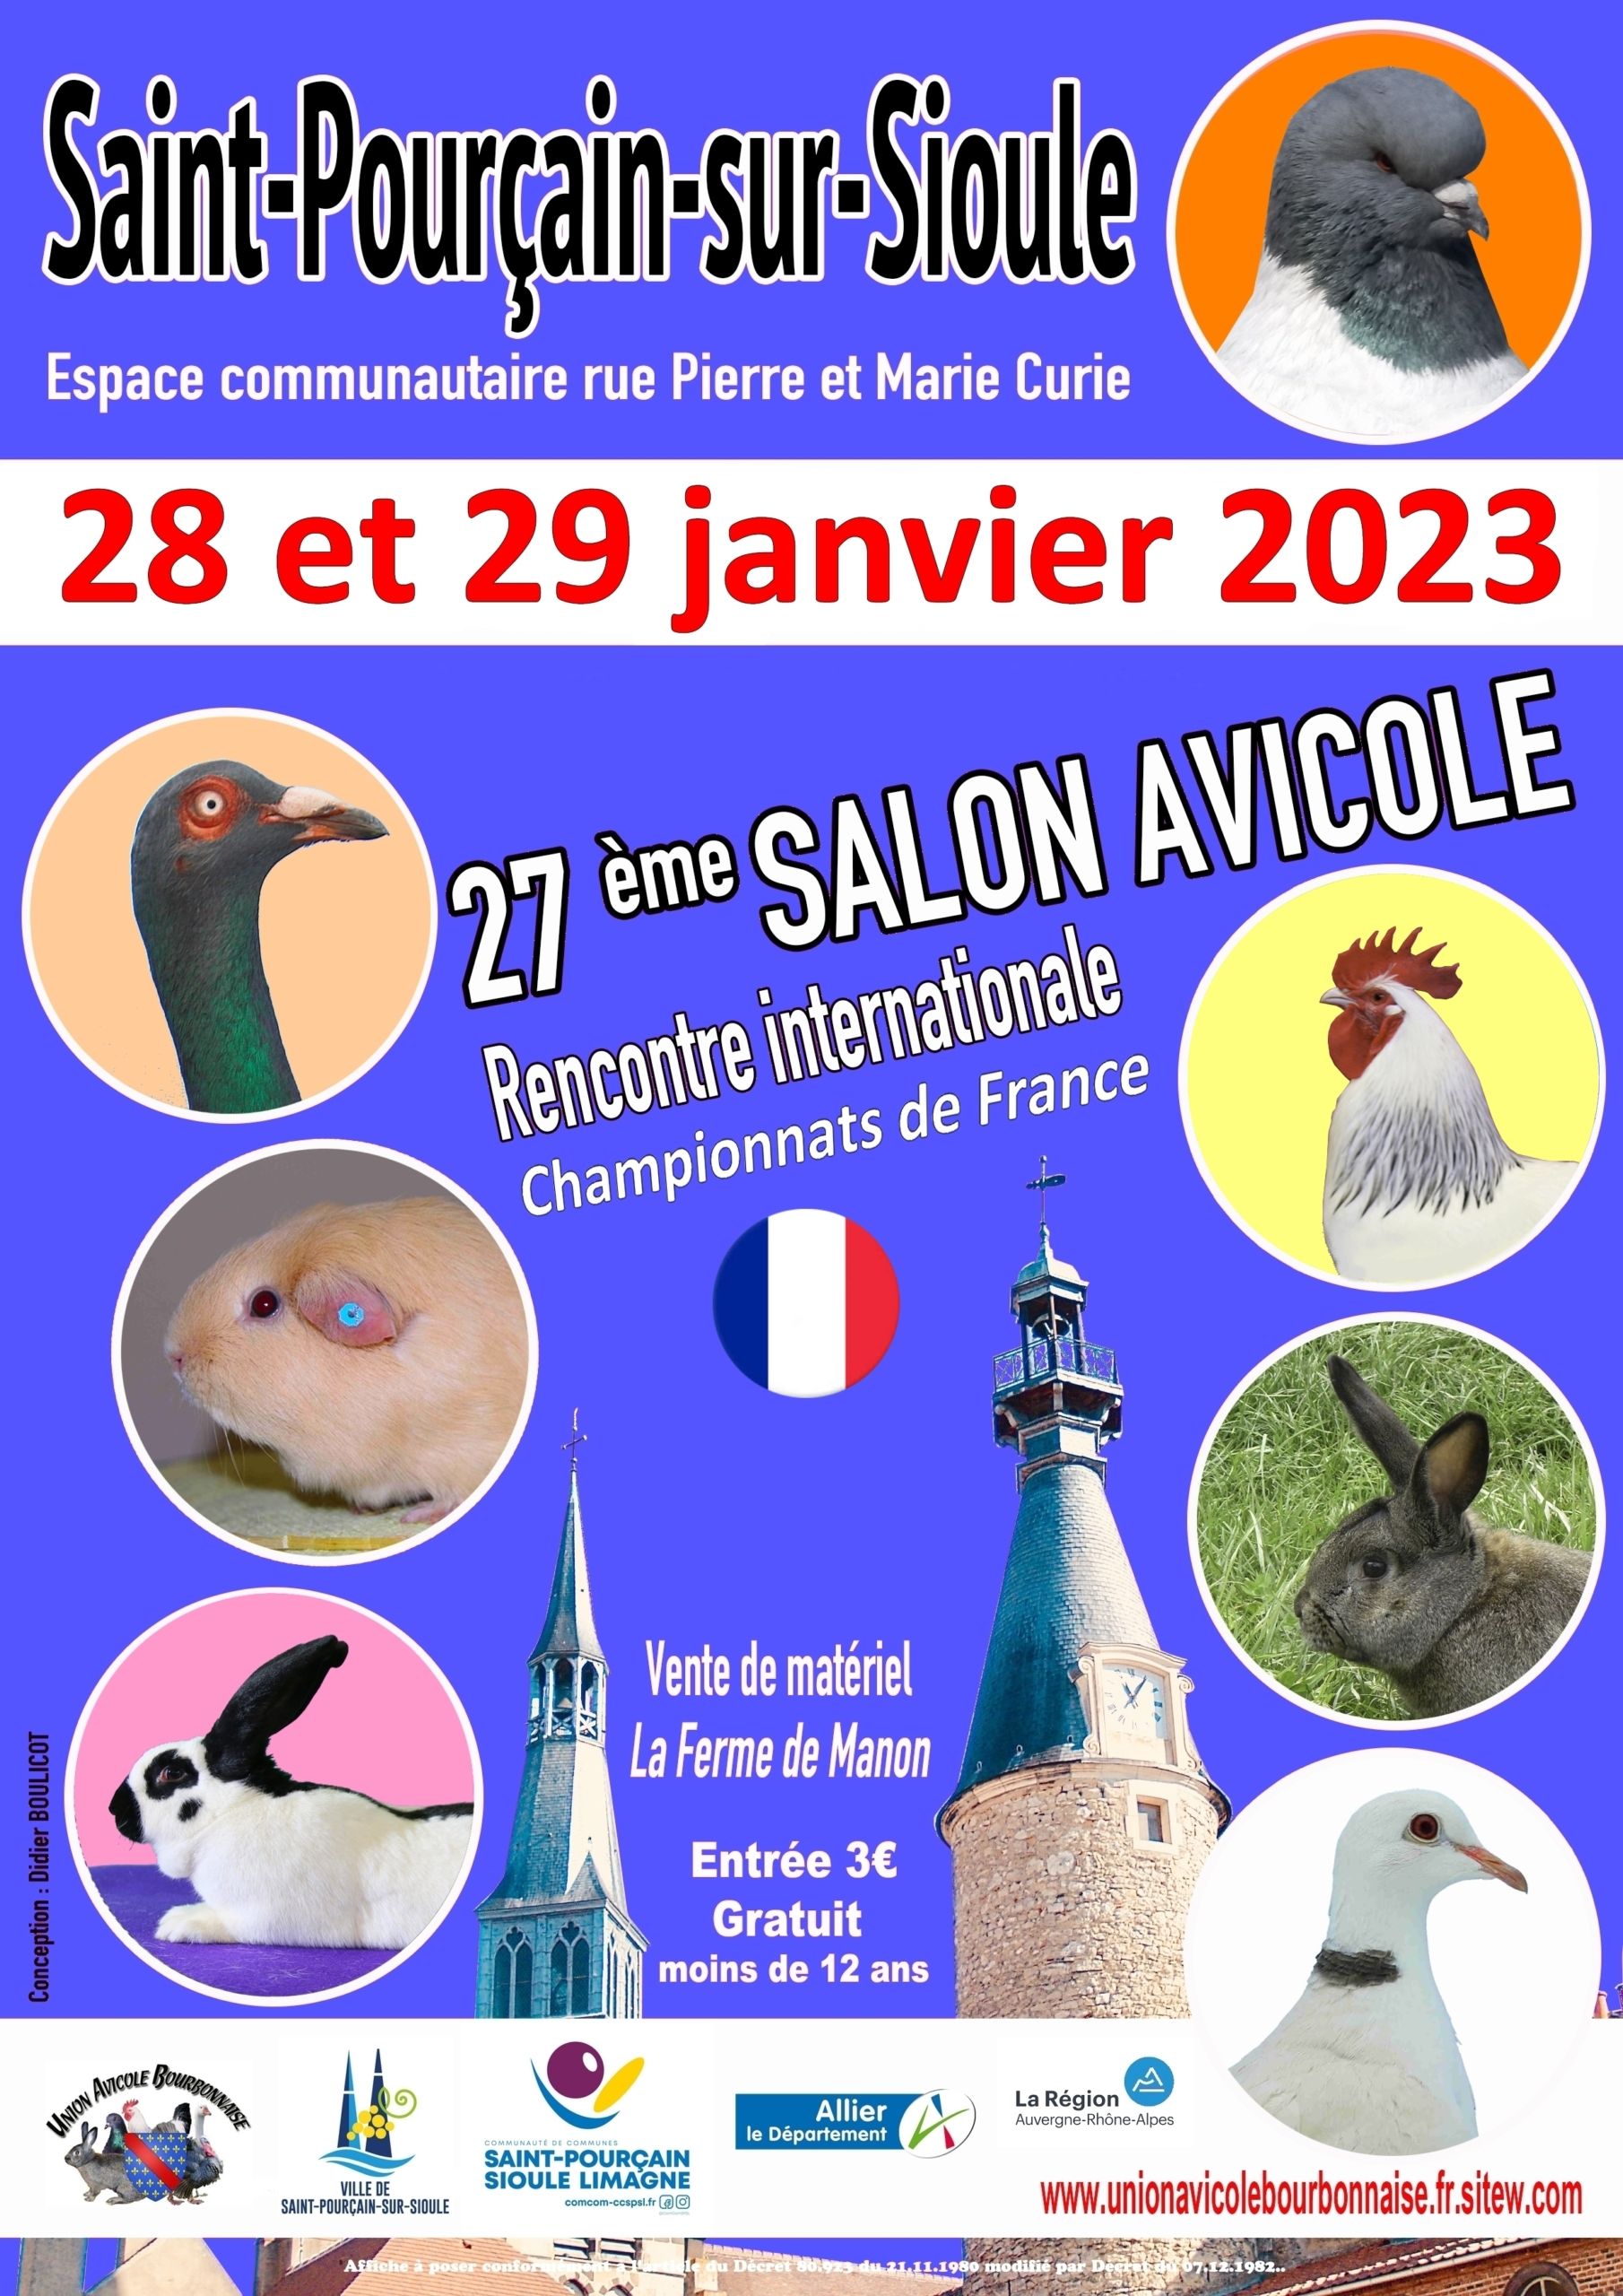 Saint-Pourçain-sur-Sioule (03) Avicole-2023-scaled